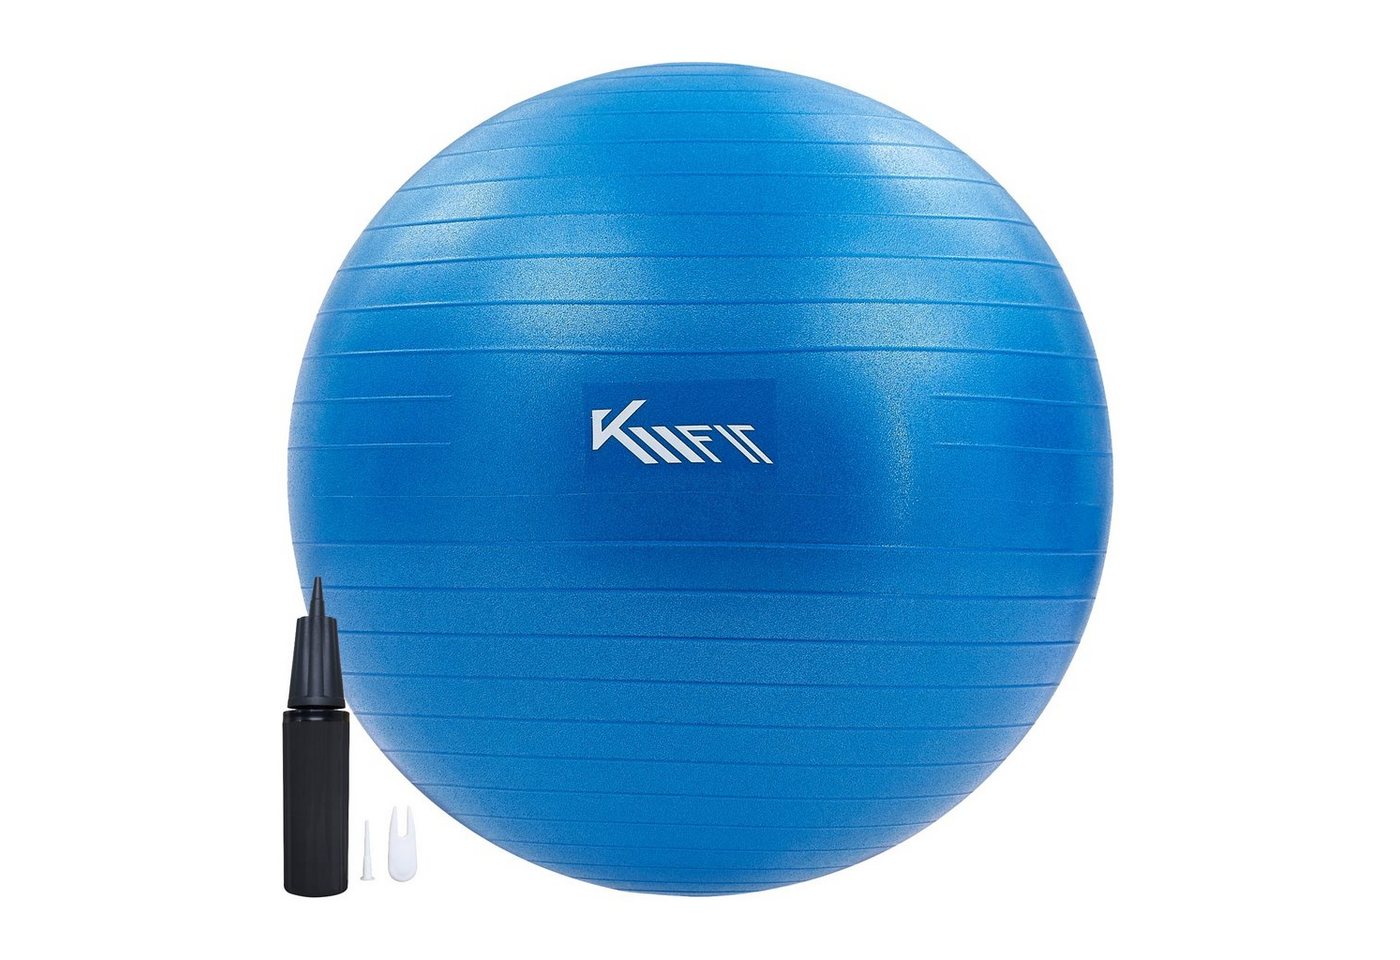 KM - Fit Gymnastikball Trainingsball Sitzball für Fitness,Yoga,Gymnastik 65 cm (mit Luft-Pumpe, Blau), Max. Belastbarkeit: 300 kg von KM - Fit